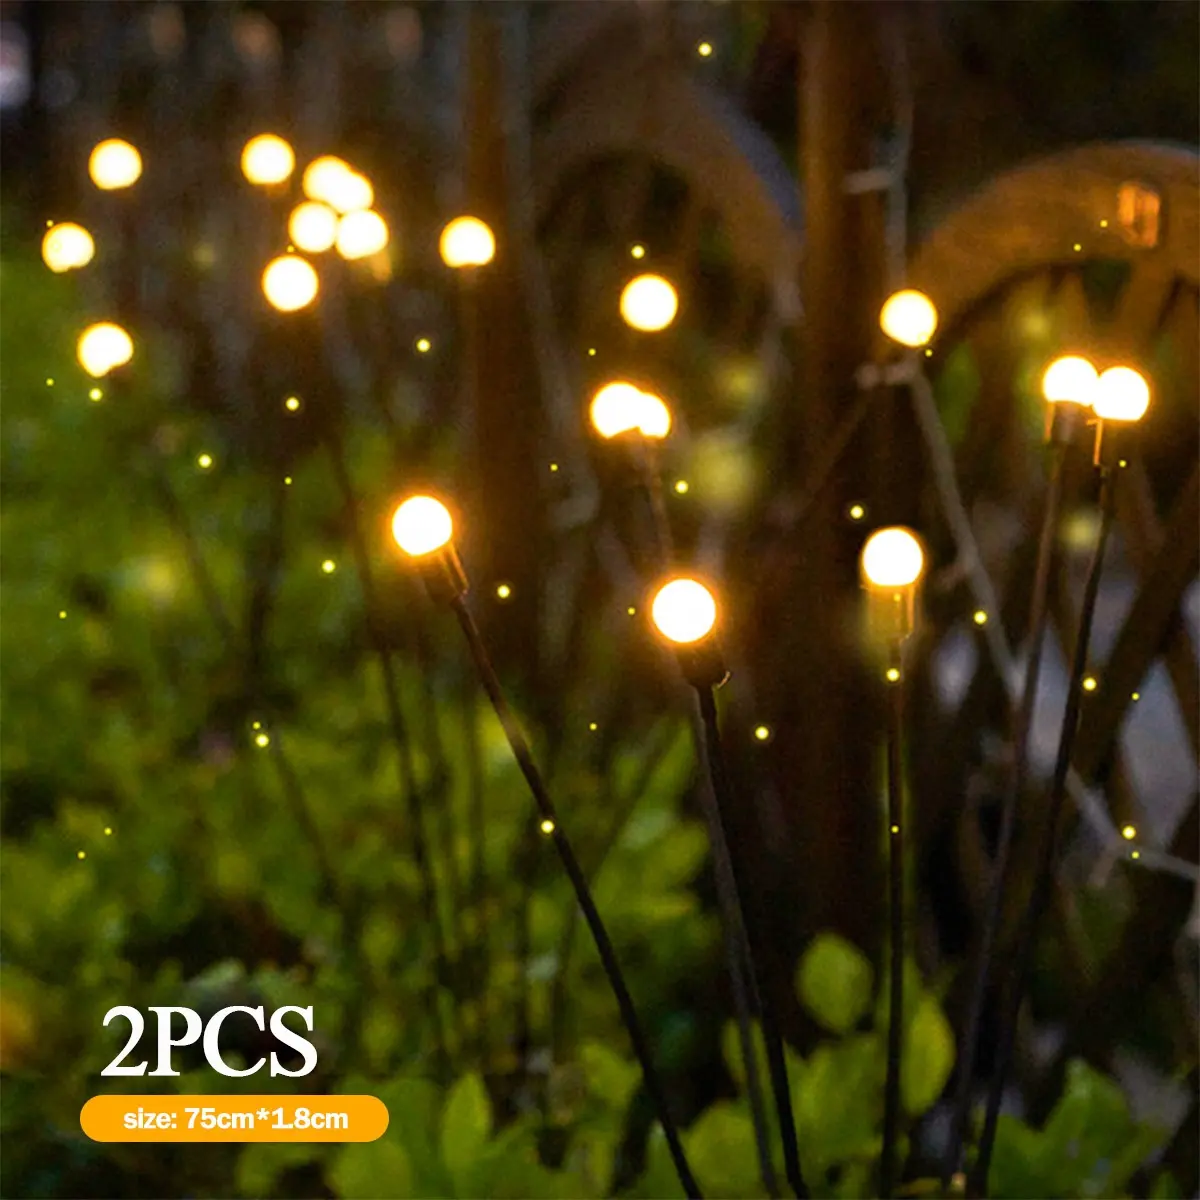 Solar Starburst Swaying Light Wind bläst Garten licht im Freien dekorative Firefly Feuerwerk Lampe für Yard Patio Pathway Dekoration